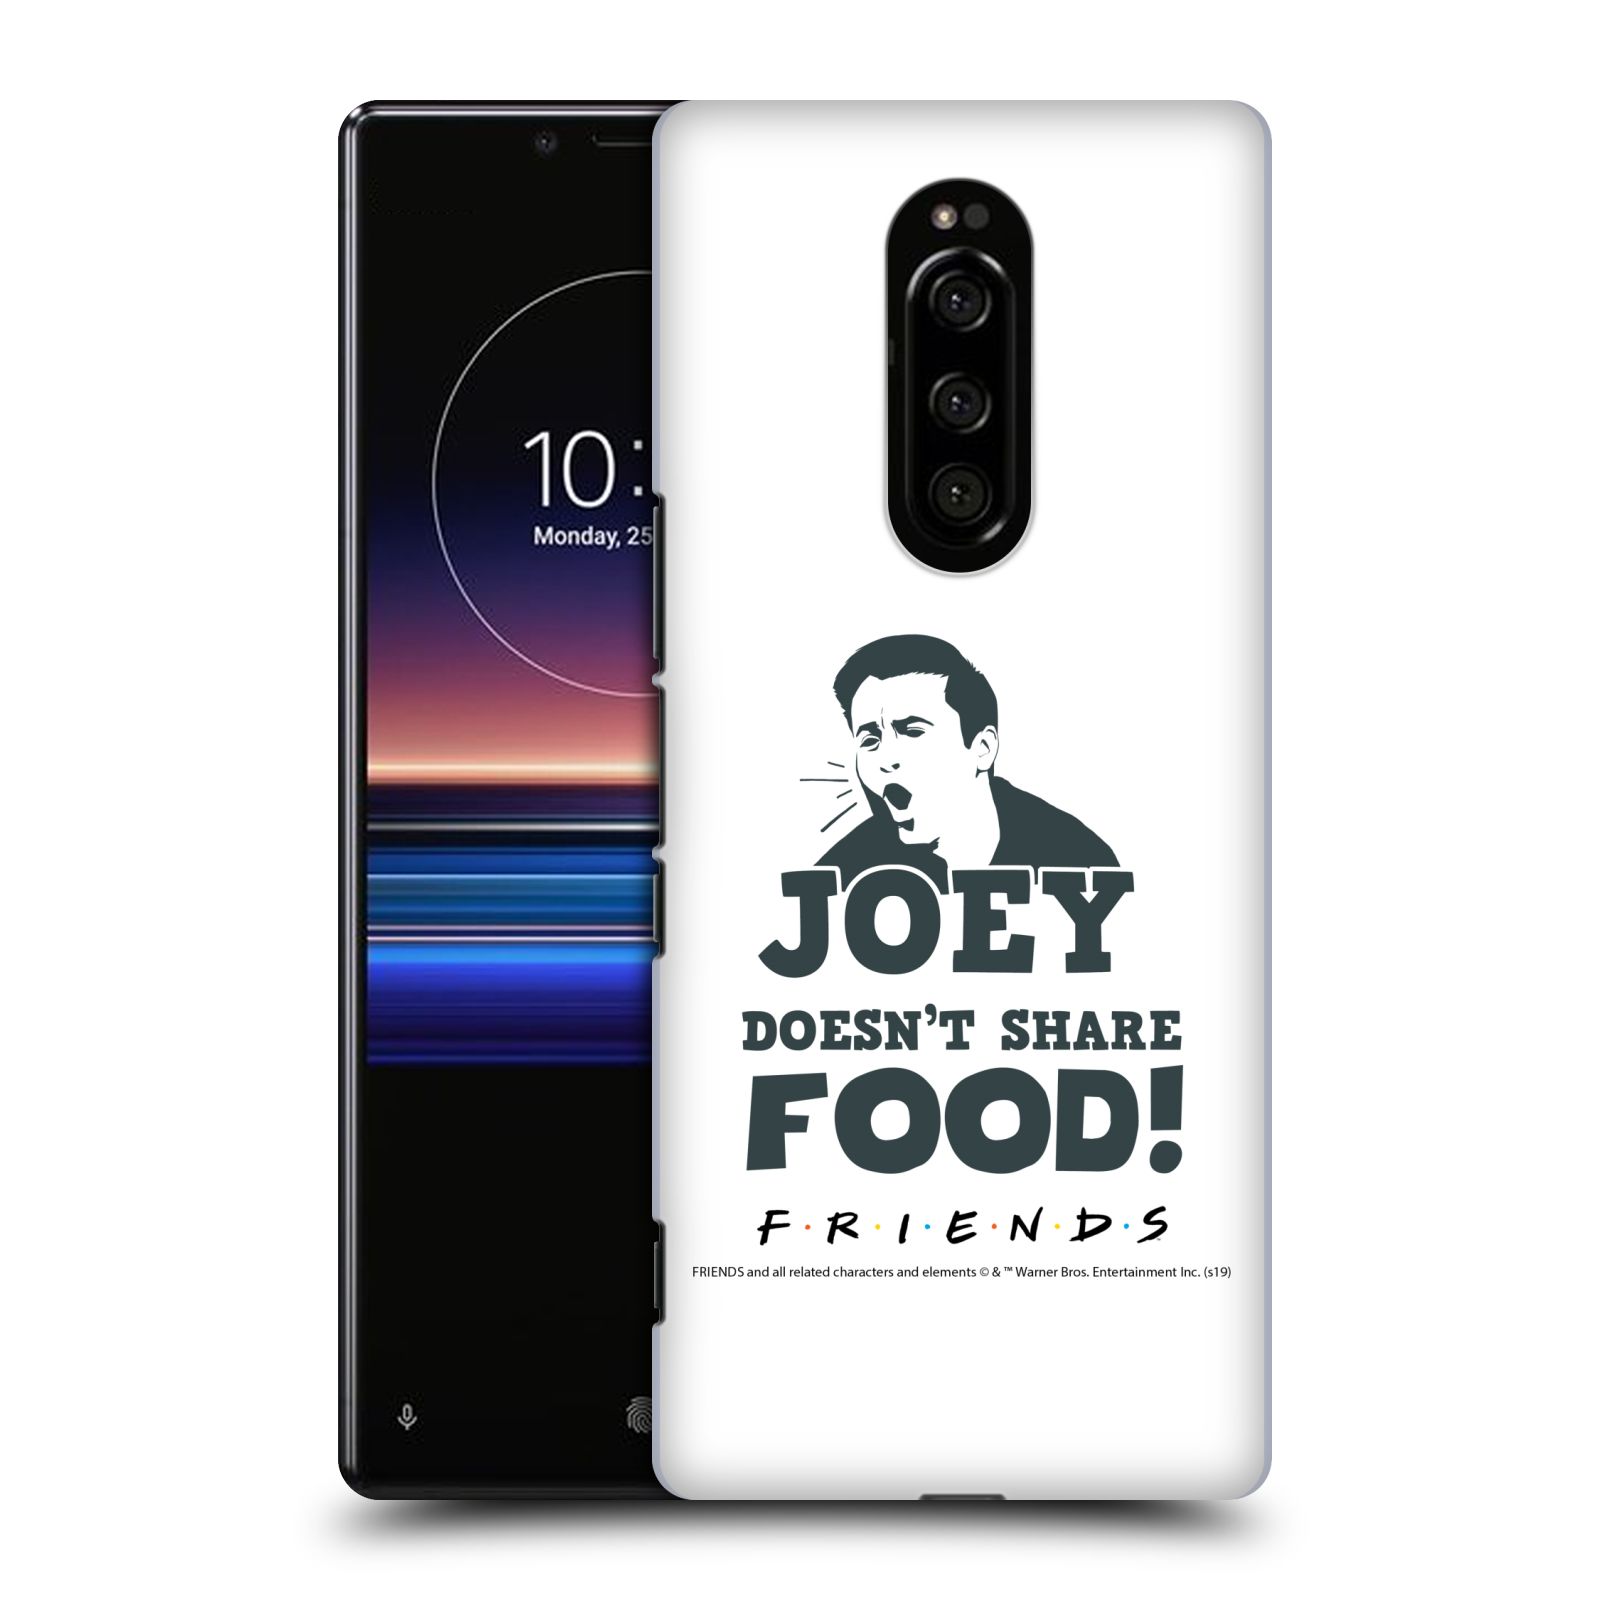 Pouzdro na mobil Sony Xperia 1 - HEAD CASE - Seriál Přátelé - Joey se o jídlo nedělí